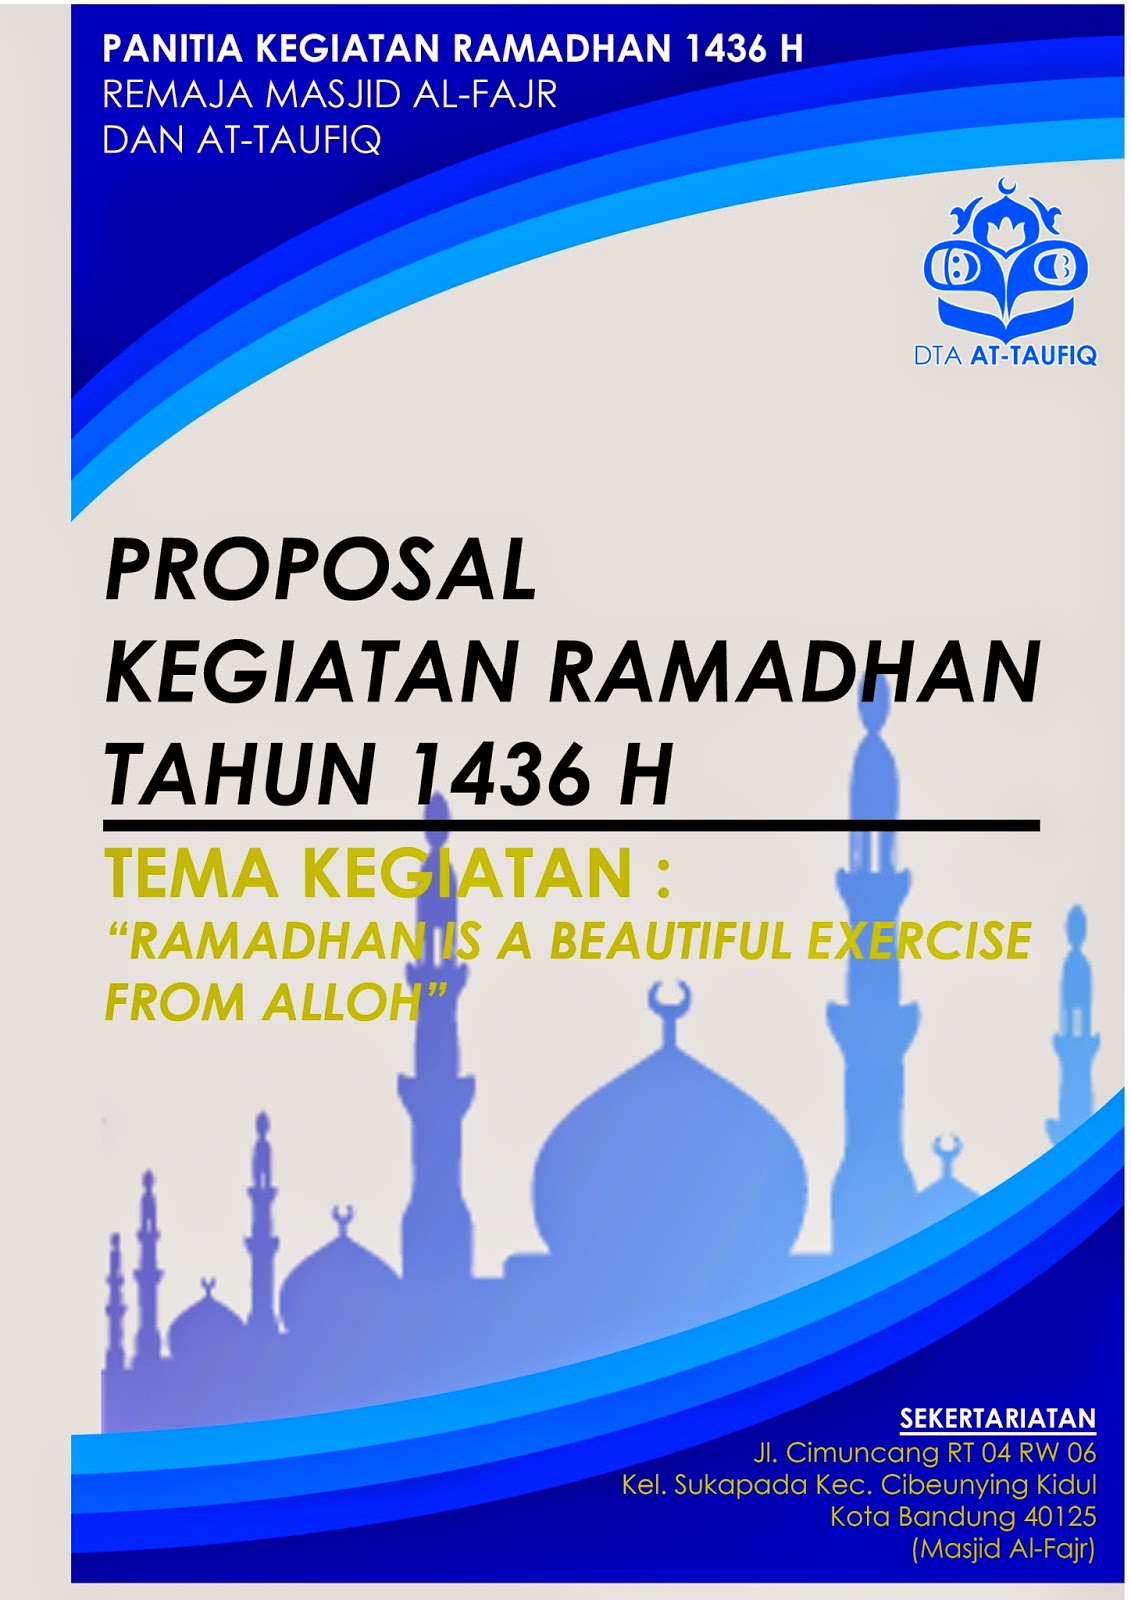 Proposal Kegiatan Ramadhan 1436 H FoRMAT Blog